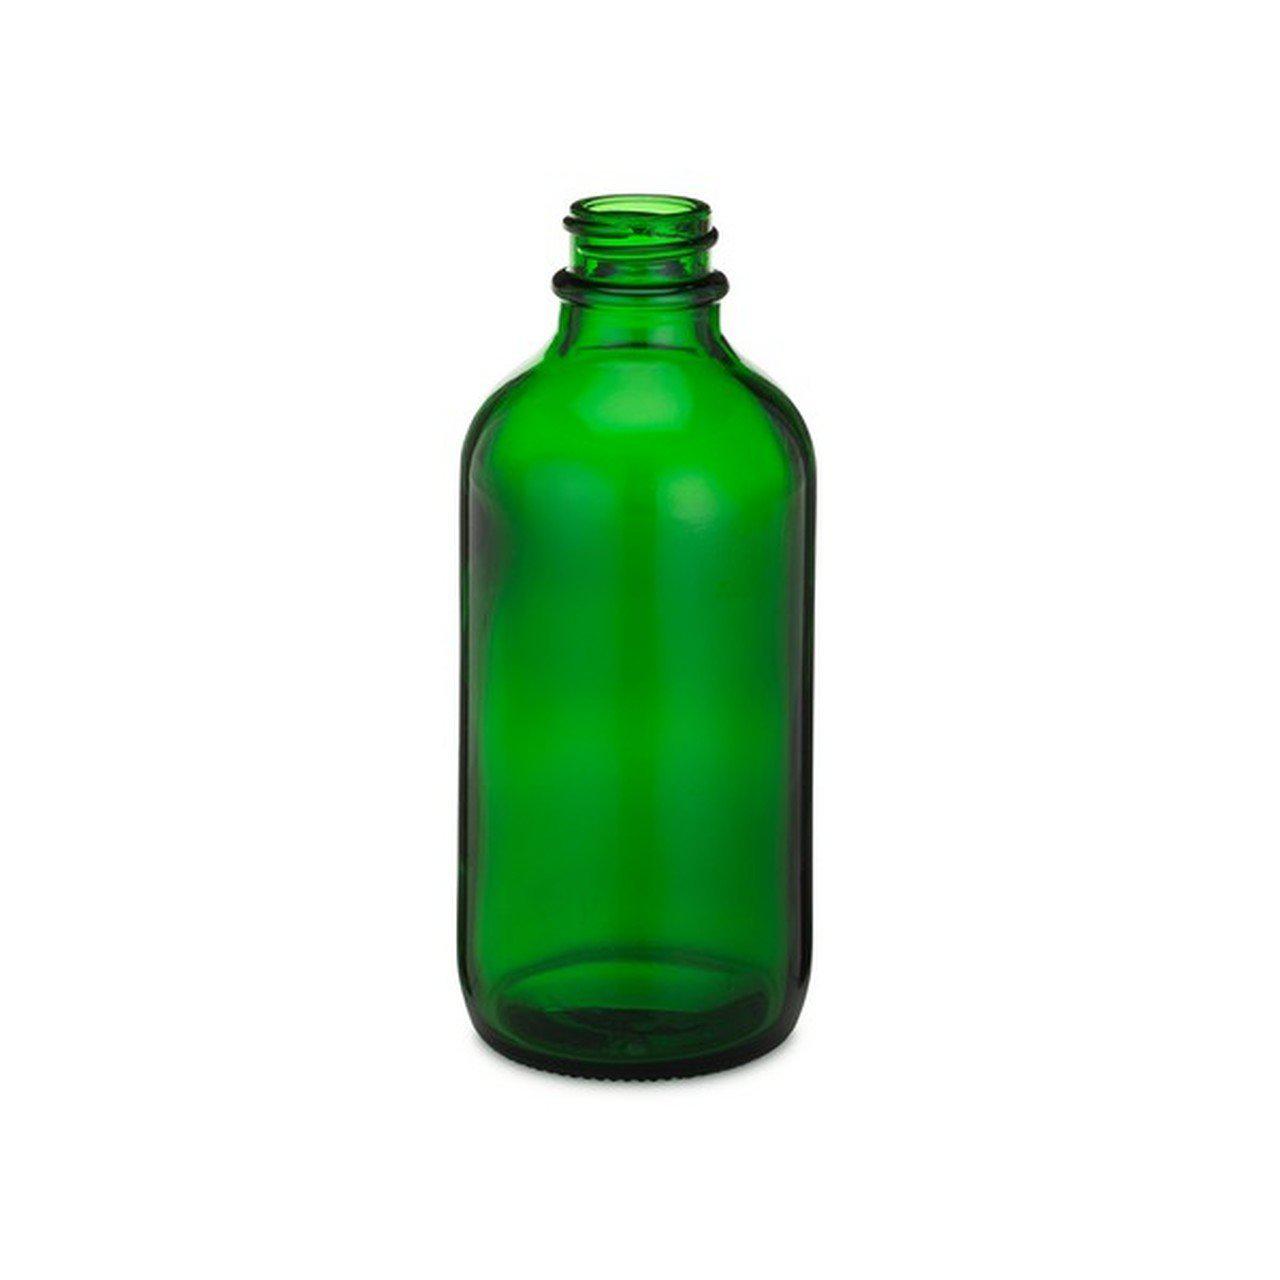 Green 2 oz glass bottles